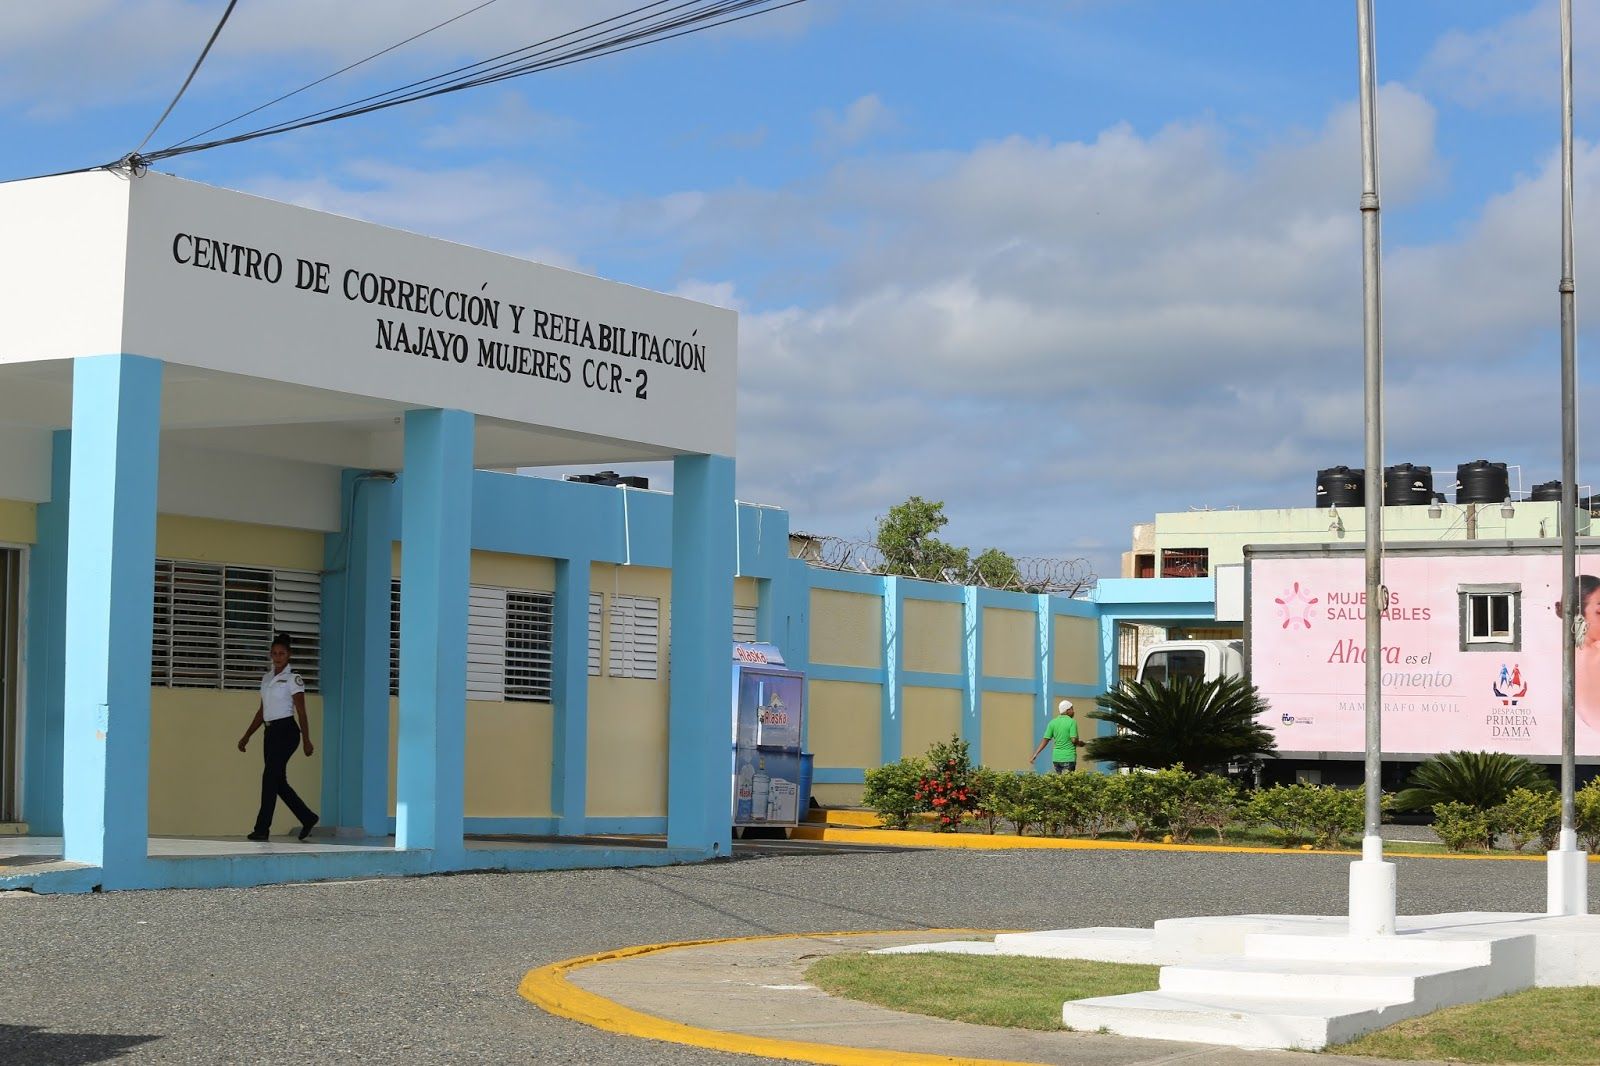 Autoridades confirman la muerte por razones de salud de dos reclusas del penal Najayo-Mujeres